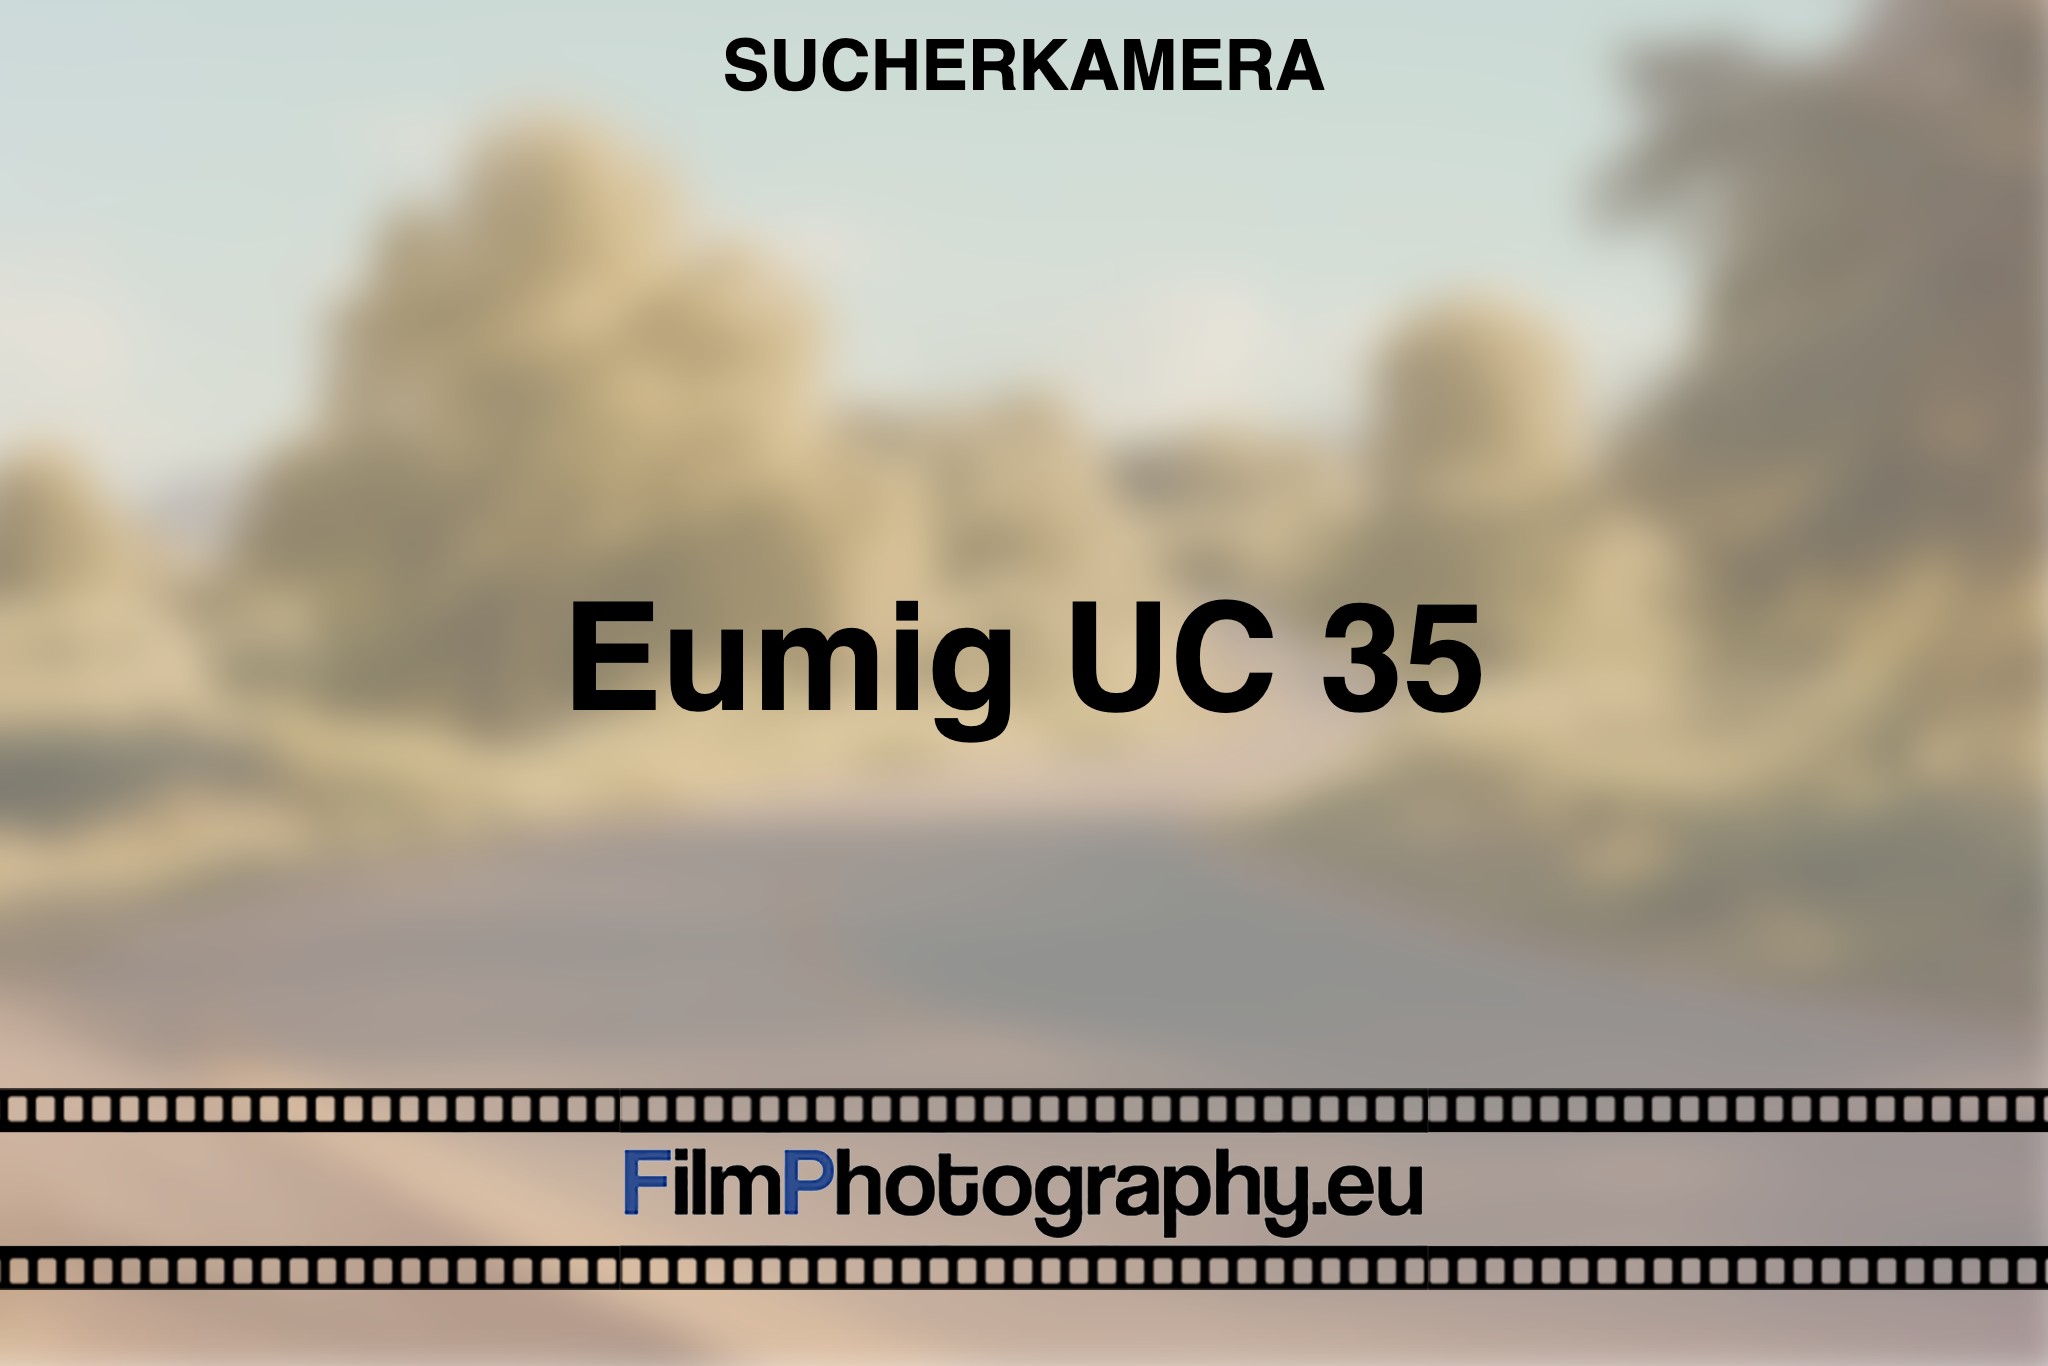 eumig-uc-35-sucherkamera-bnv